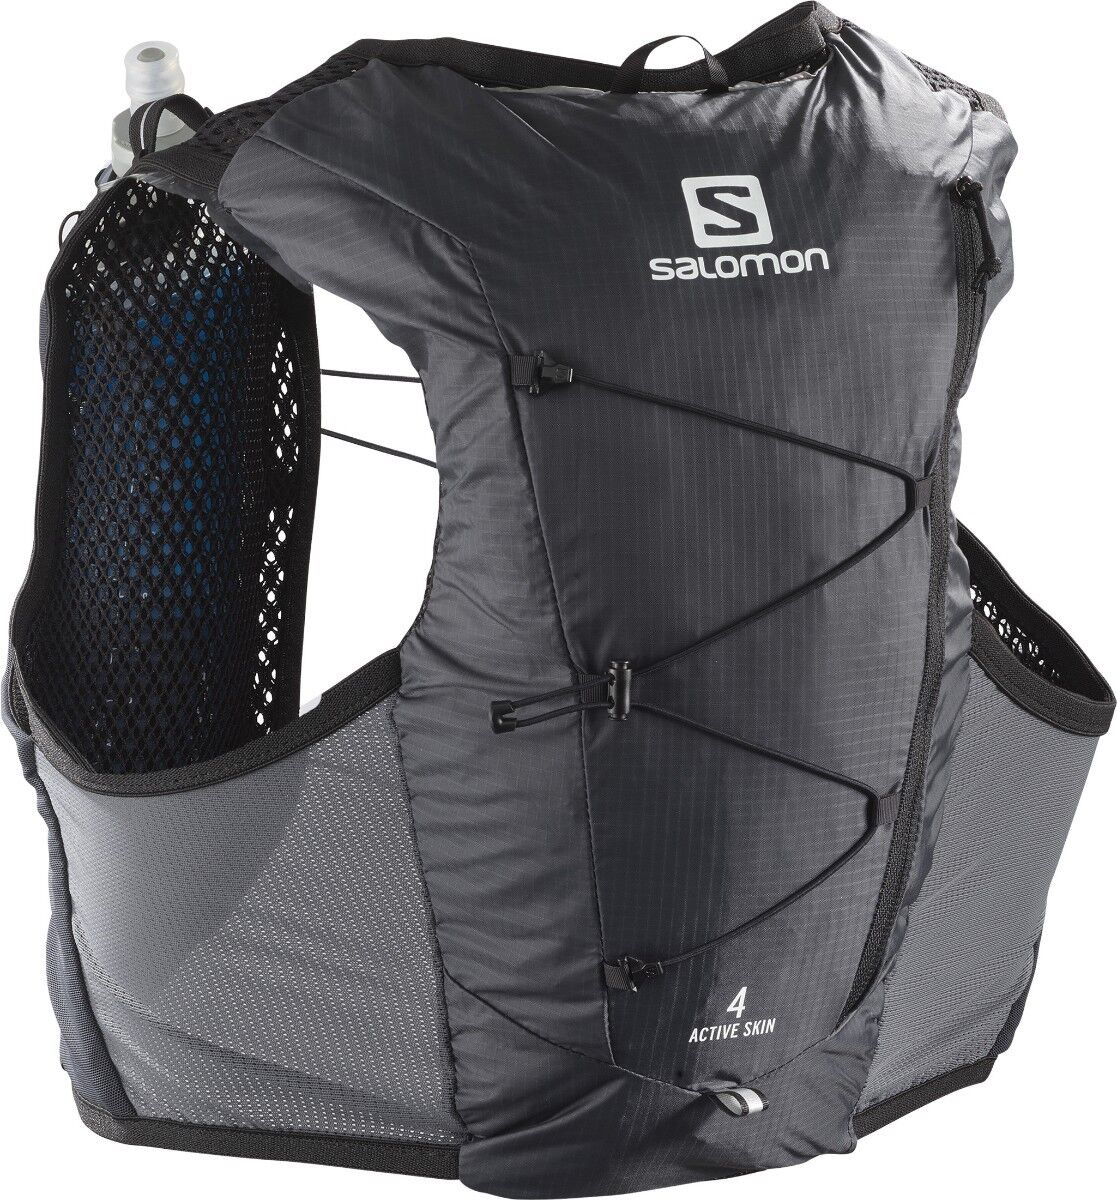 Salomon Active Skin 4 Set - Trail running backpack - Men's